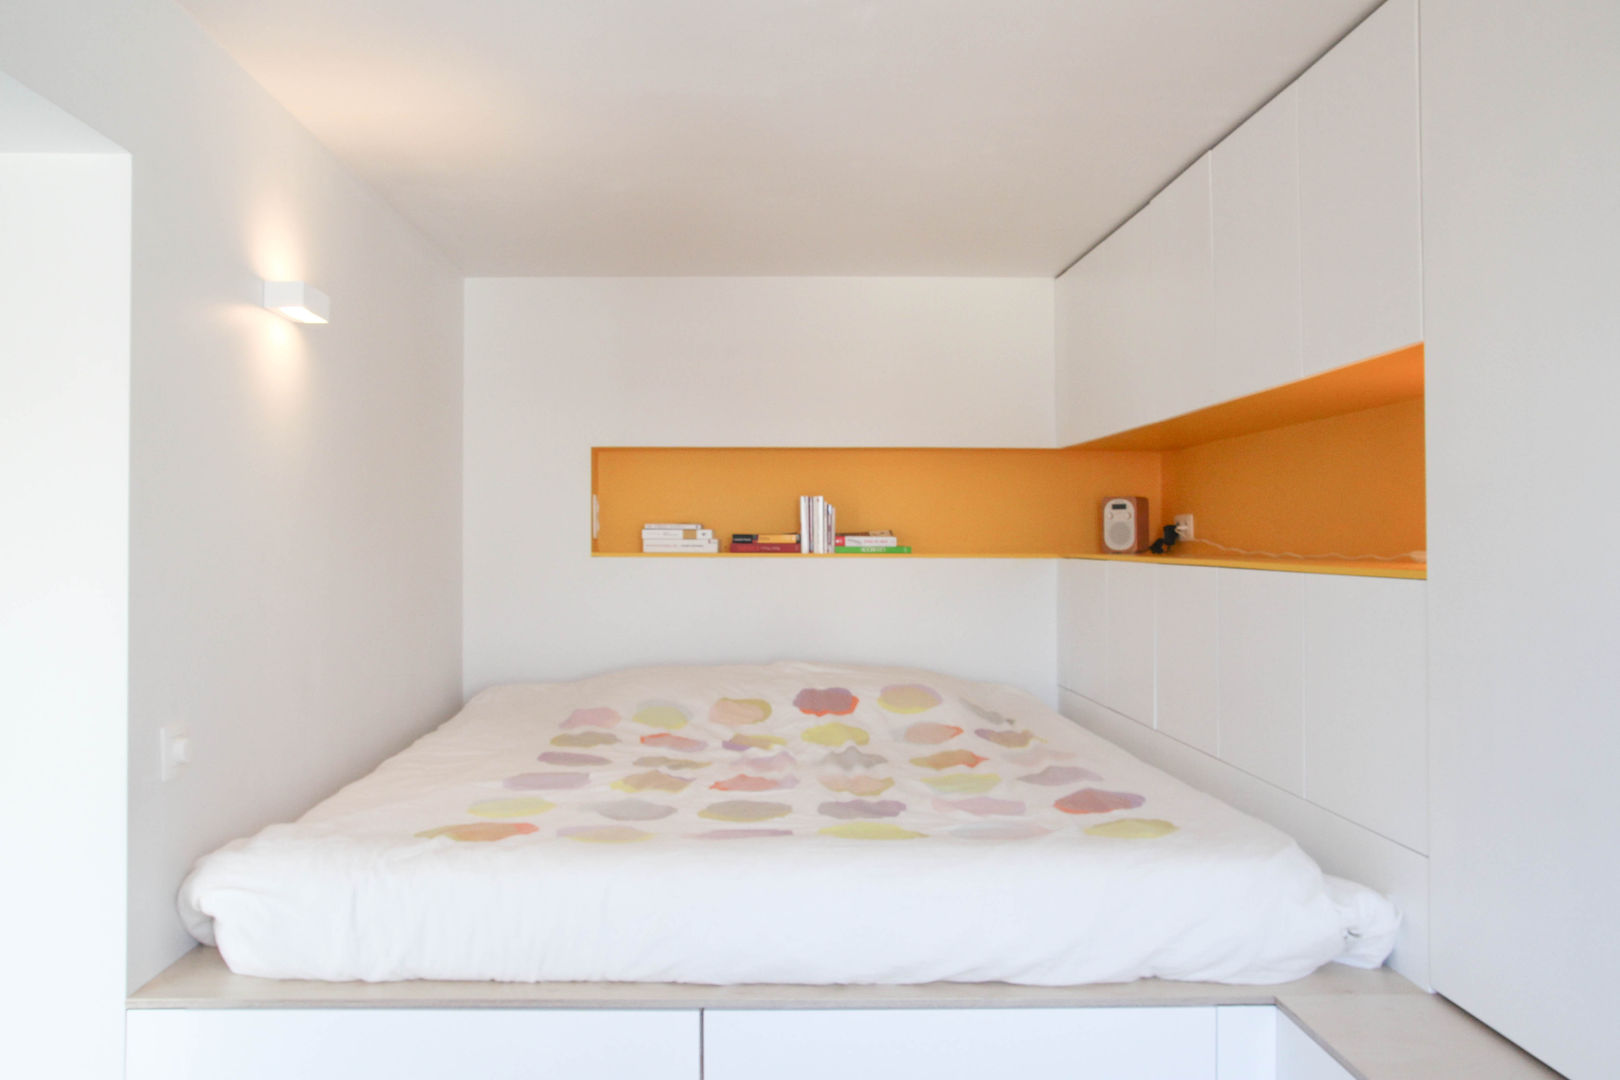 Rénovation d'un appartement bruxellois, Alizée Dassonville | architecture Alizée Dassonville | architecture غرفة نوم